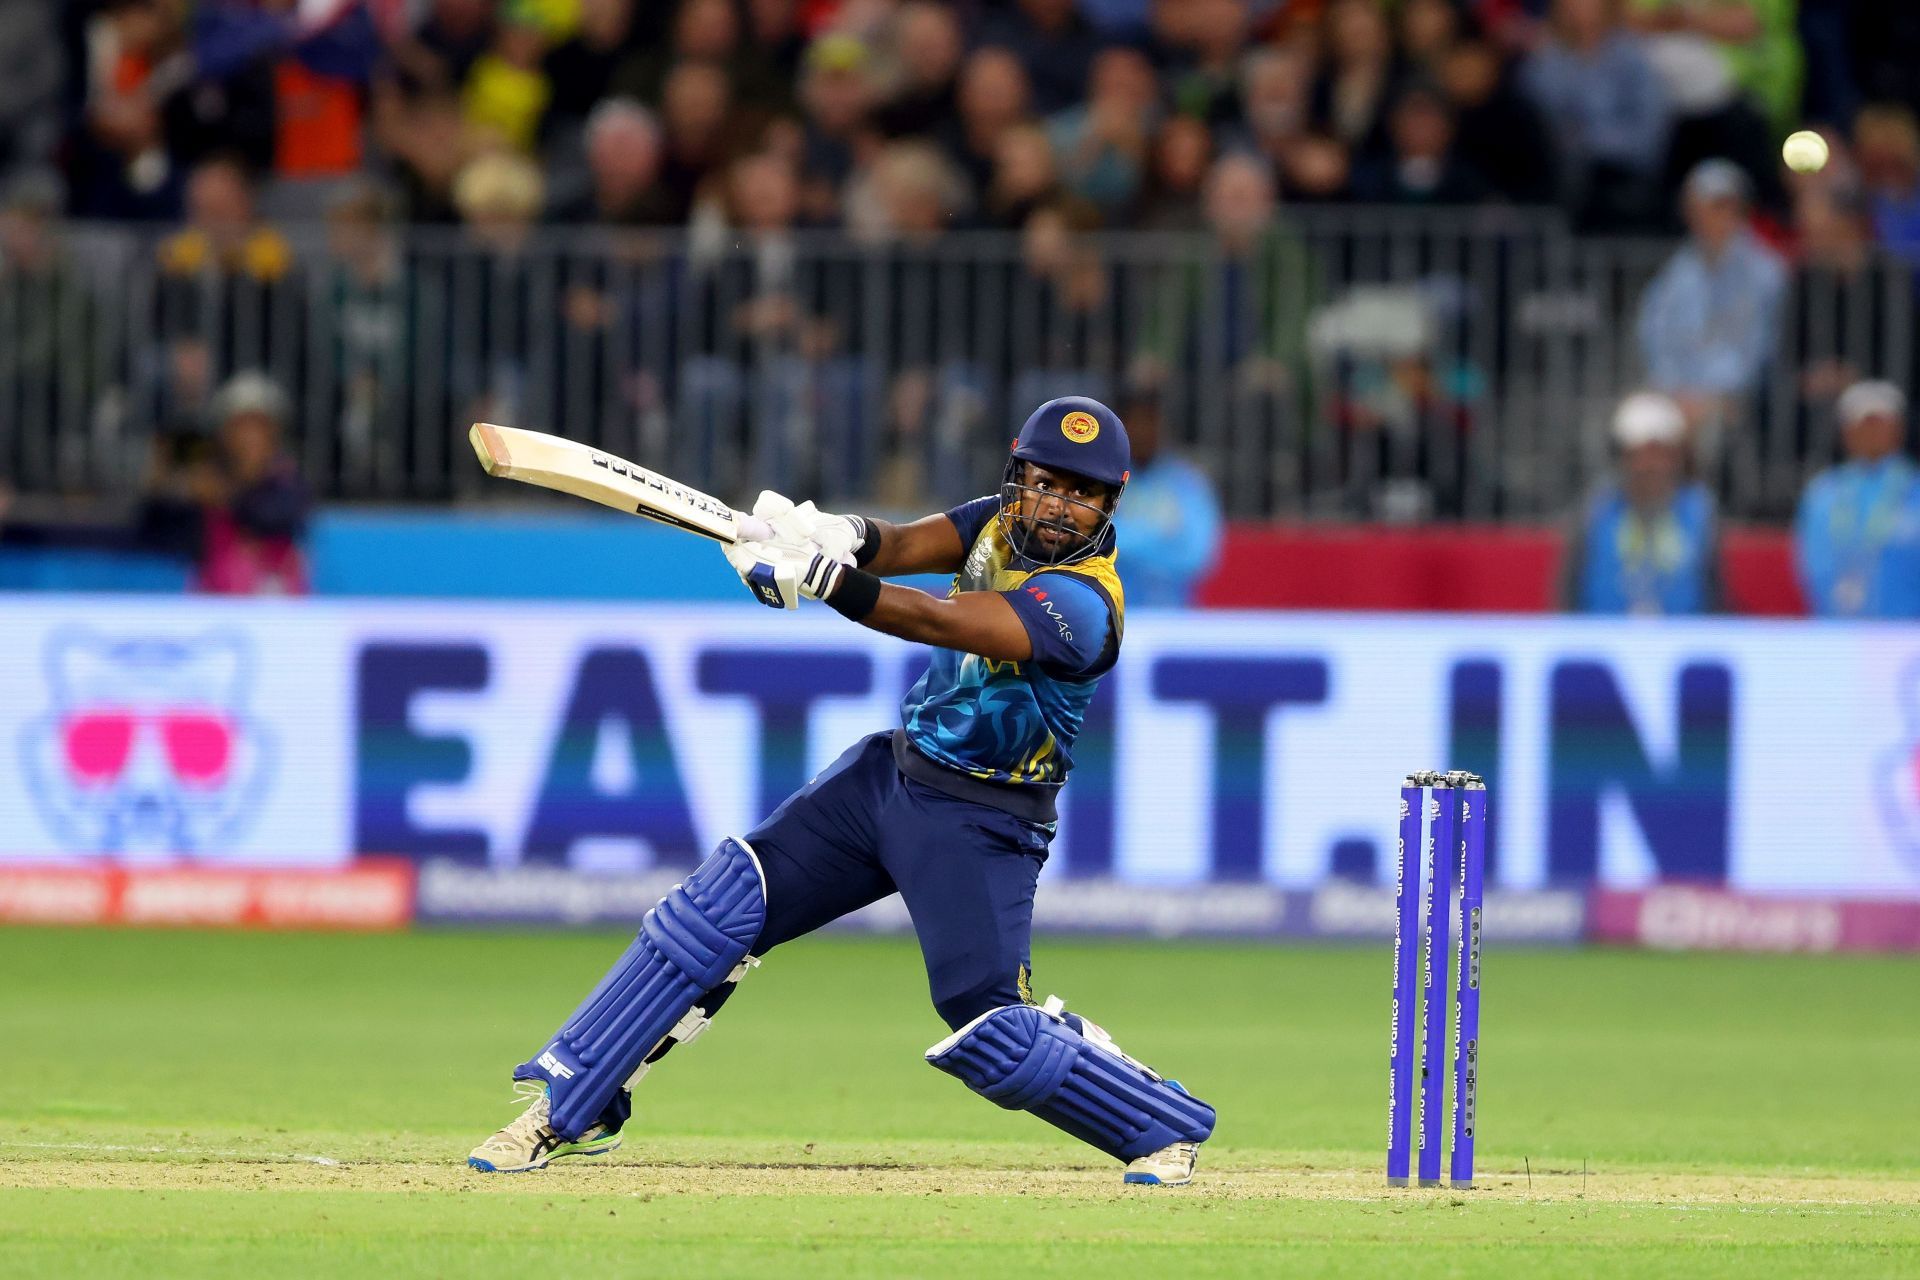 Can Charith Asalanka help Sri Lanka win the third ODI? (Image: Getty)